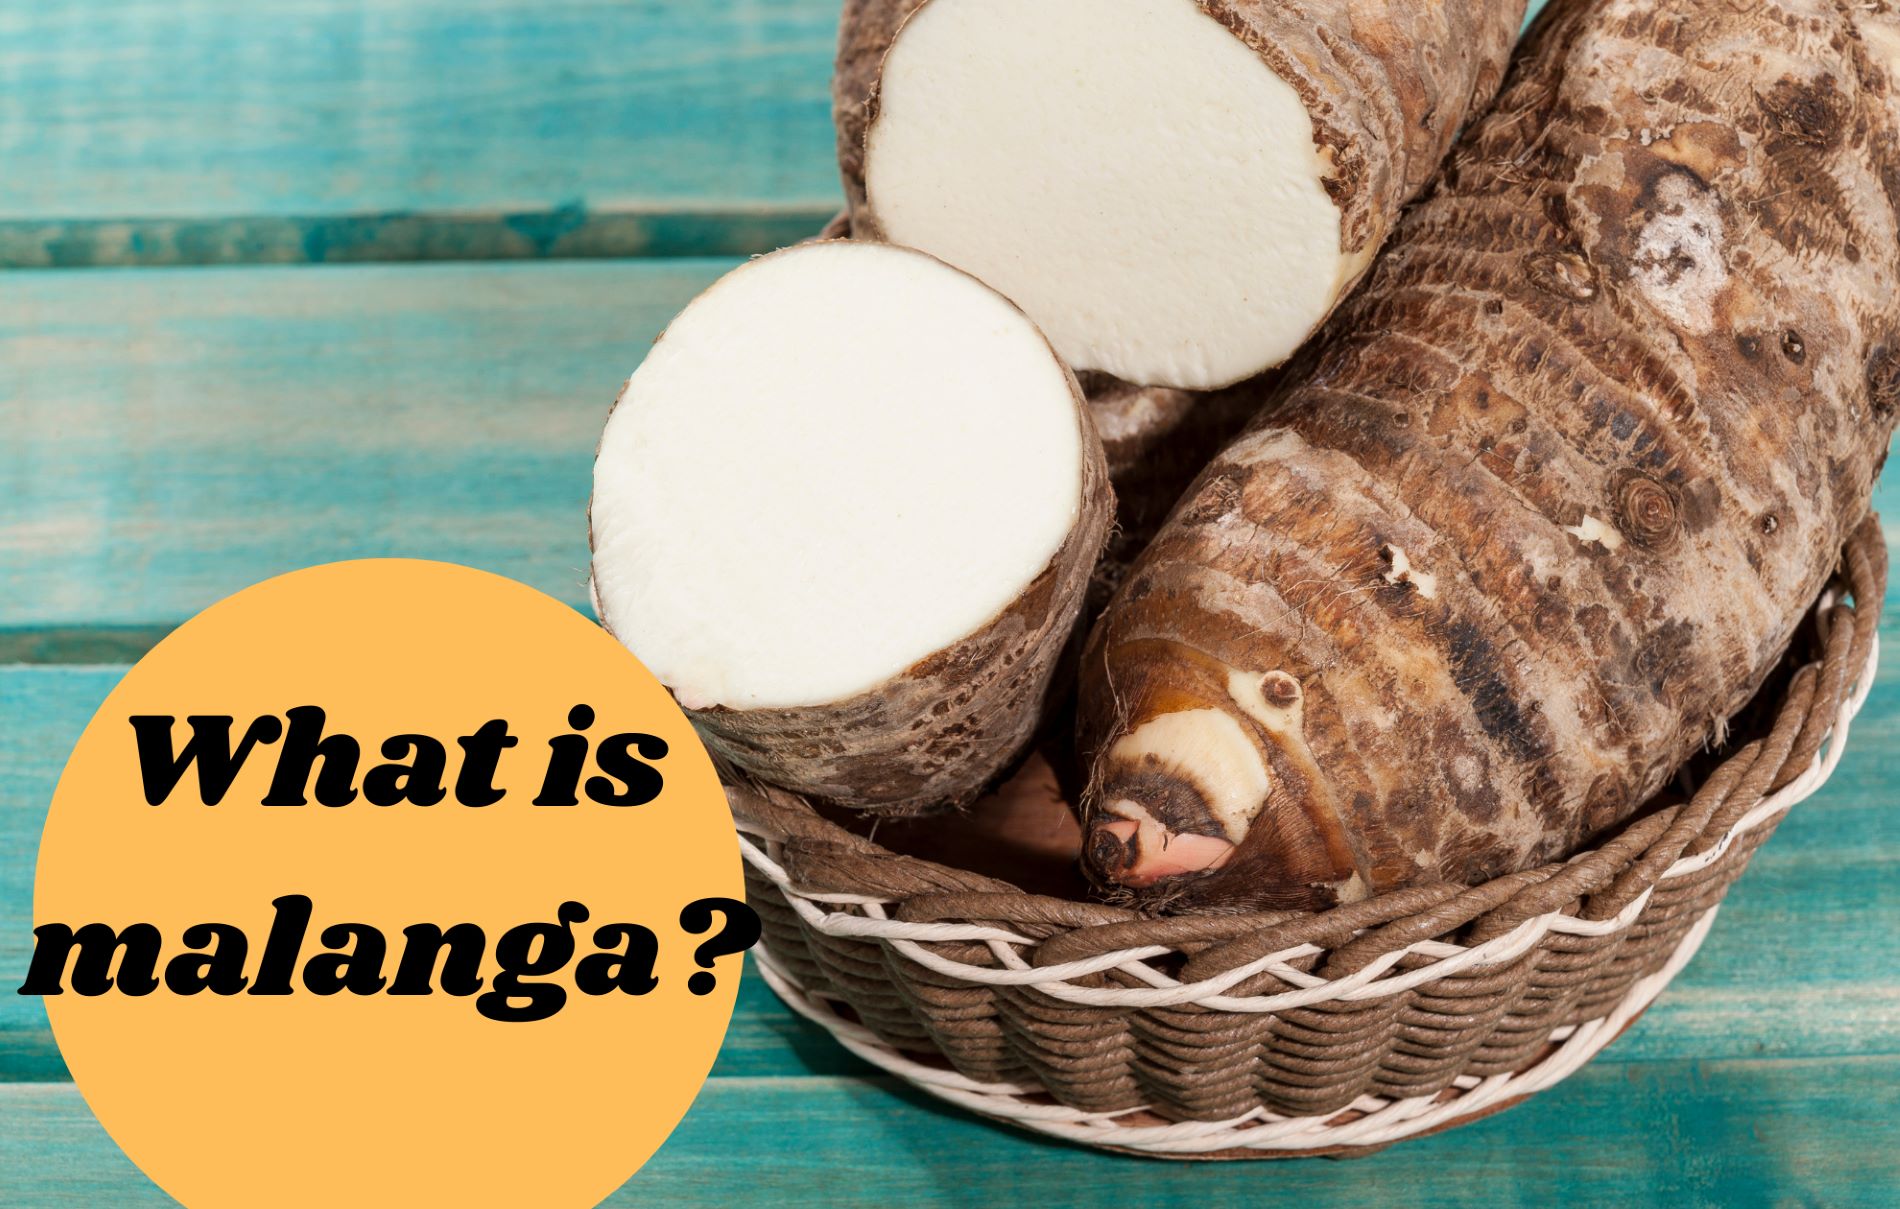 Malanga 101: What is Malanga?